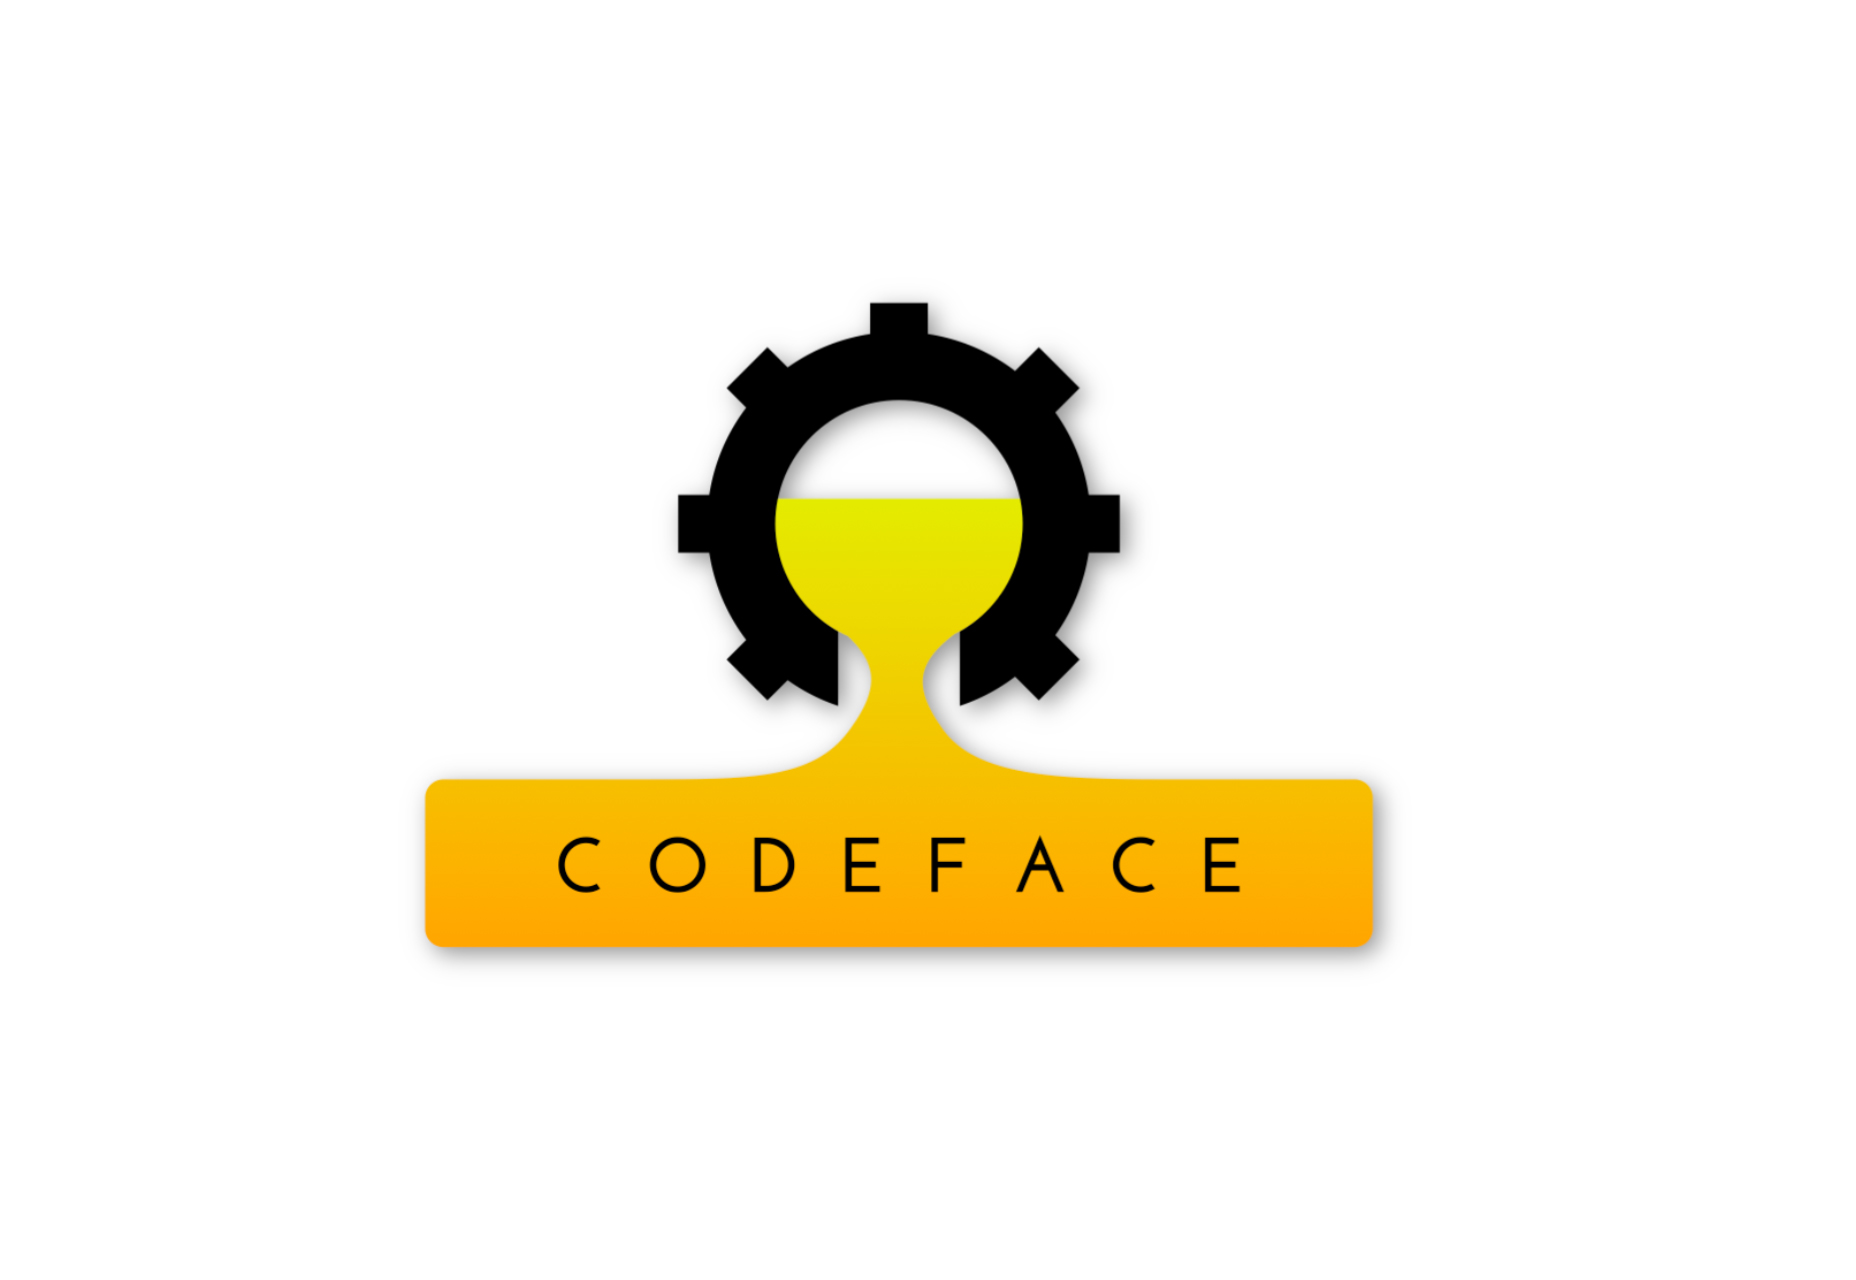 Codeface: A Set of Development Skírnarfontur